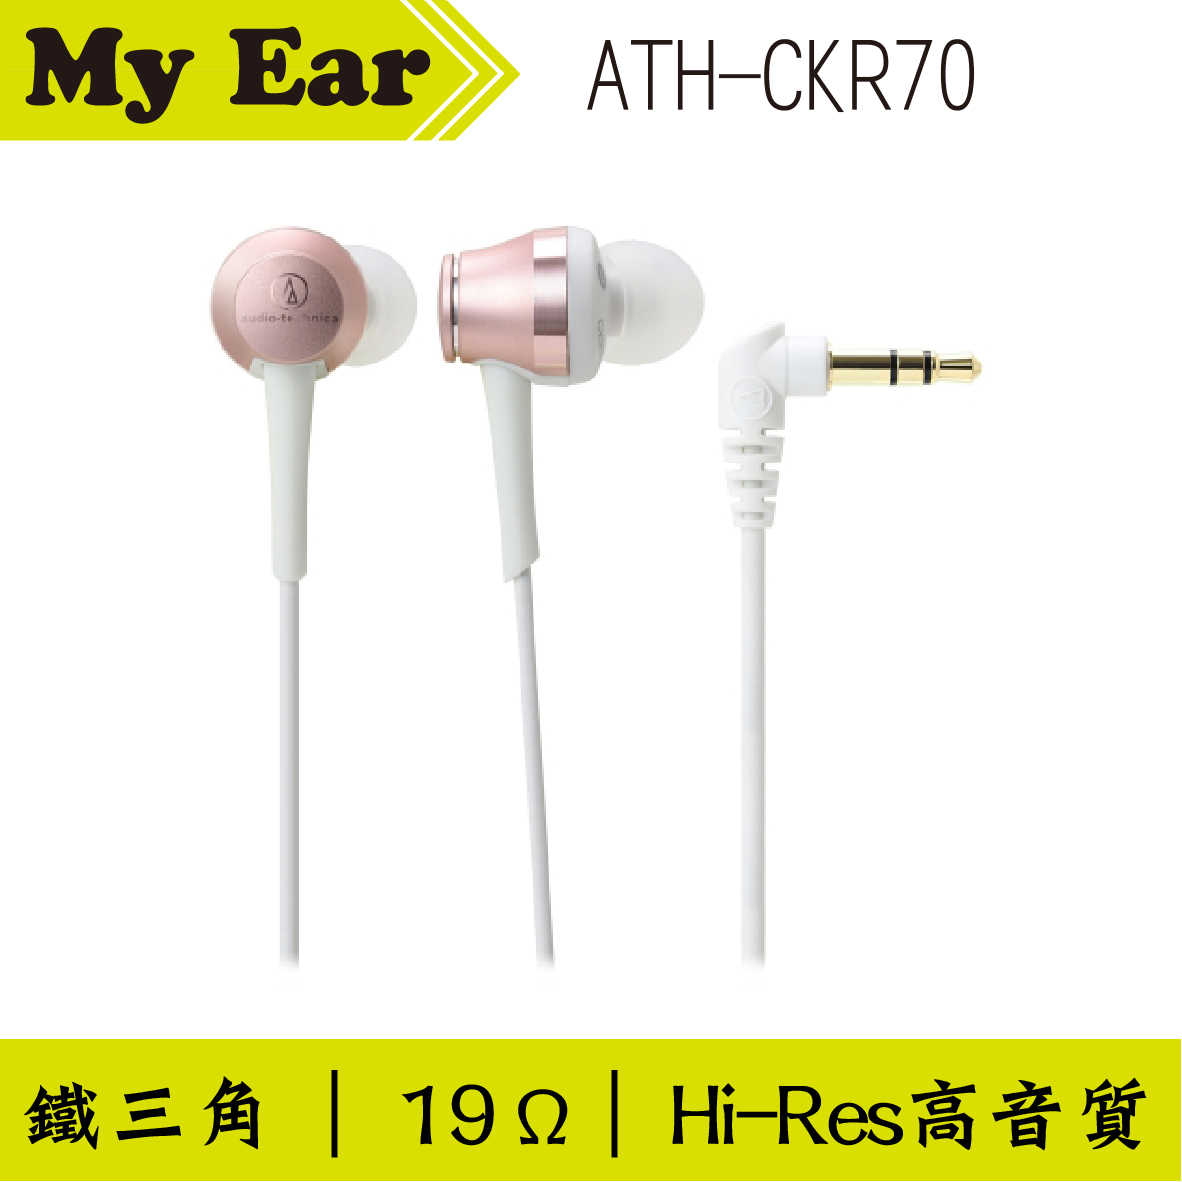 鐵三角 ATH-CKR70 耳道式耳機 玫瑰金色｜My Ear 耳機專門店